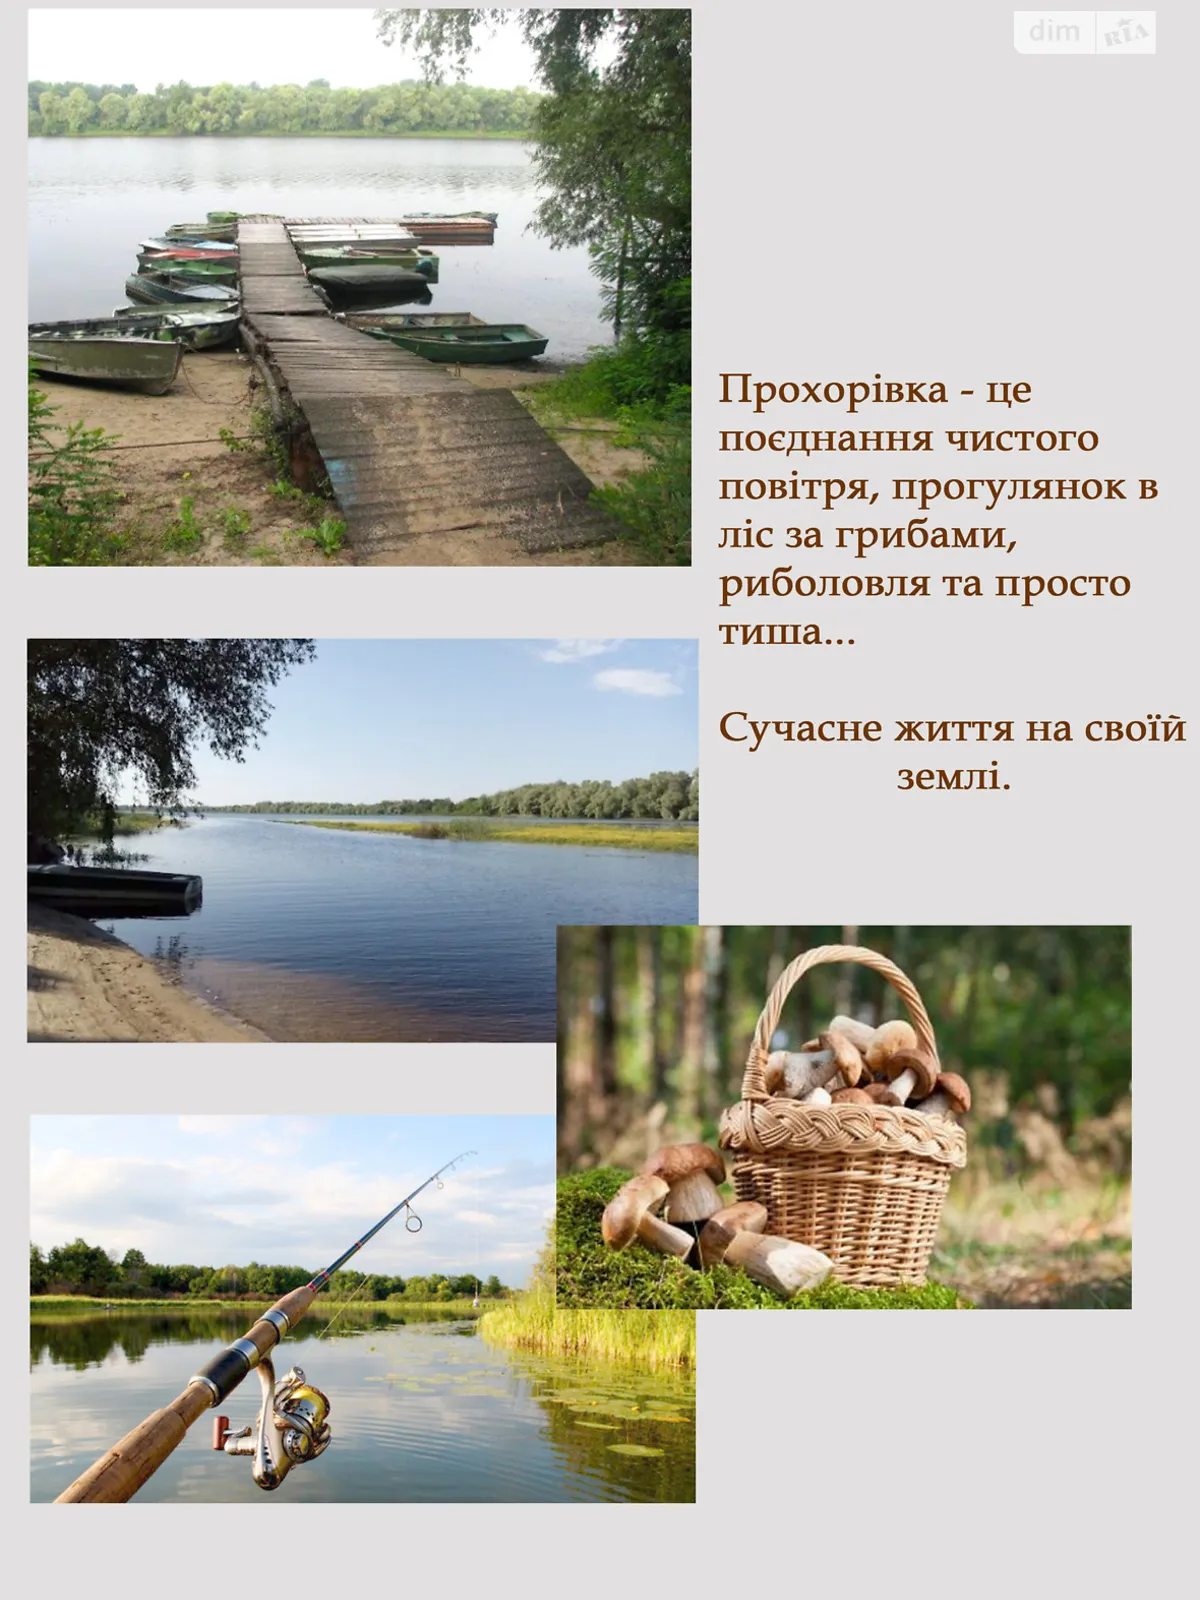 Продается земельный участок 35 соток в Черкасской области - фото 2